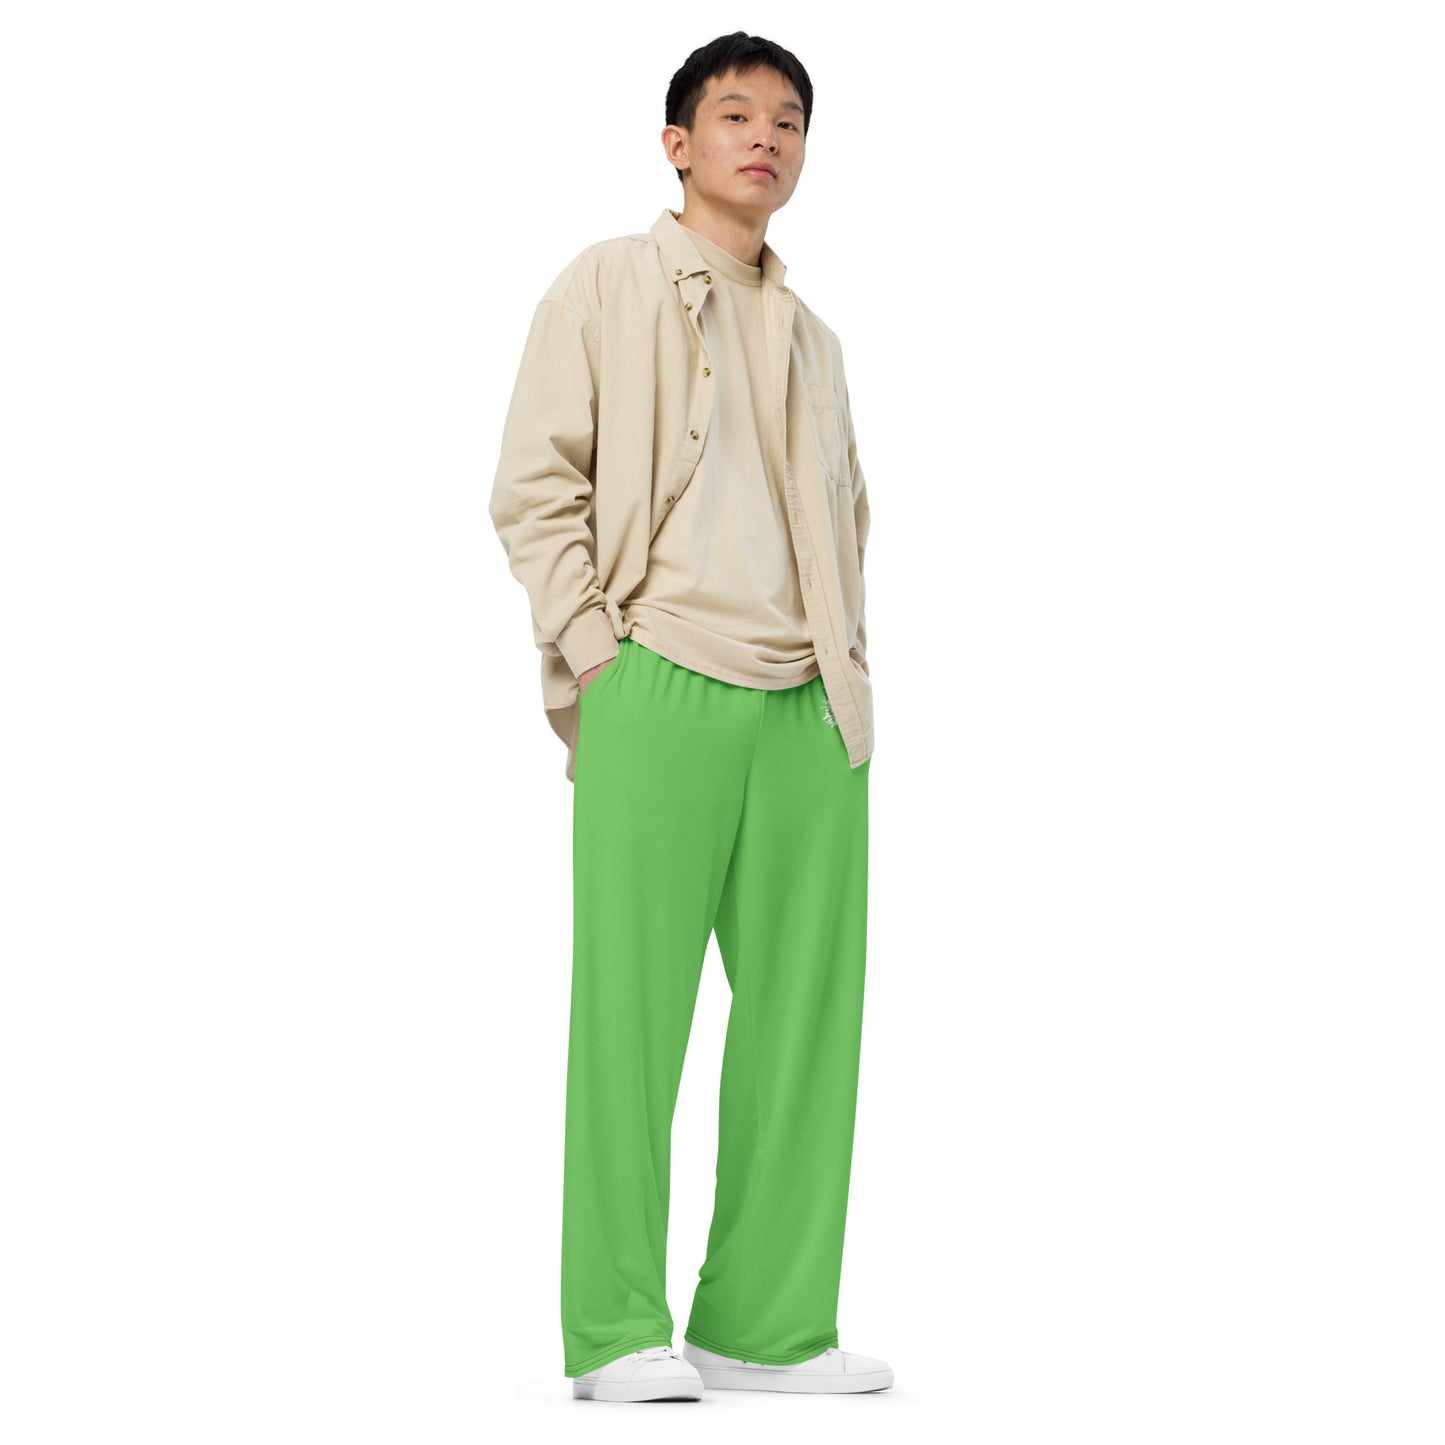 Light Green wide-leg pants